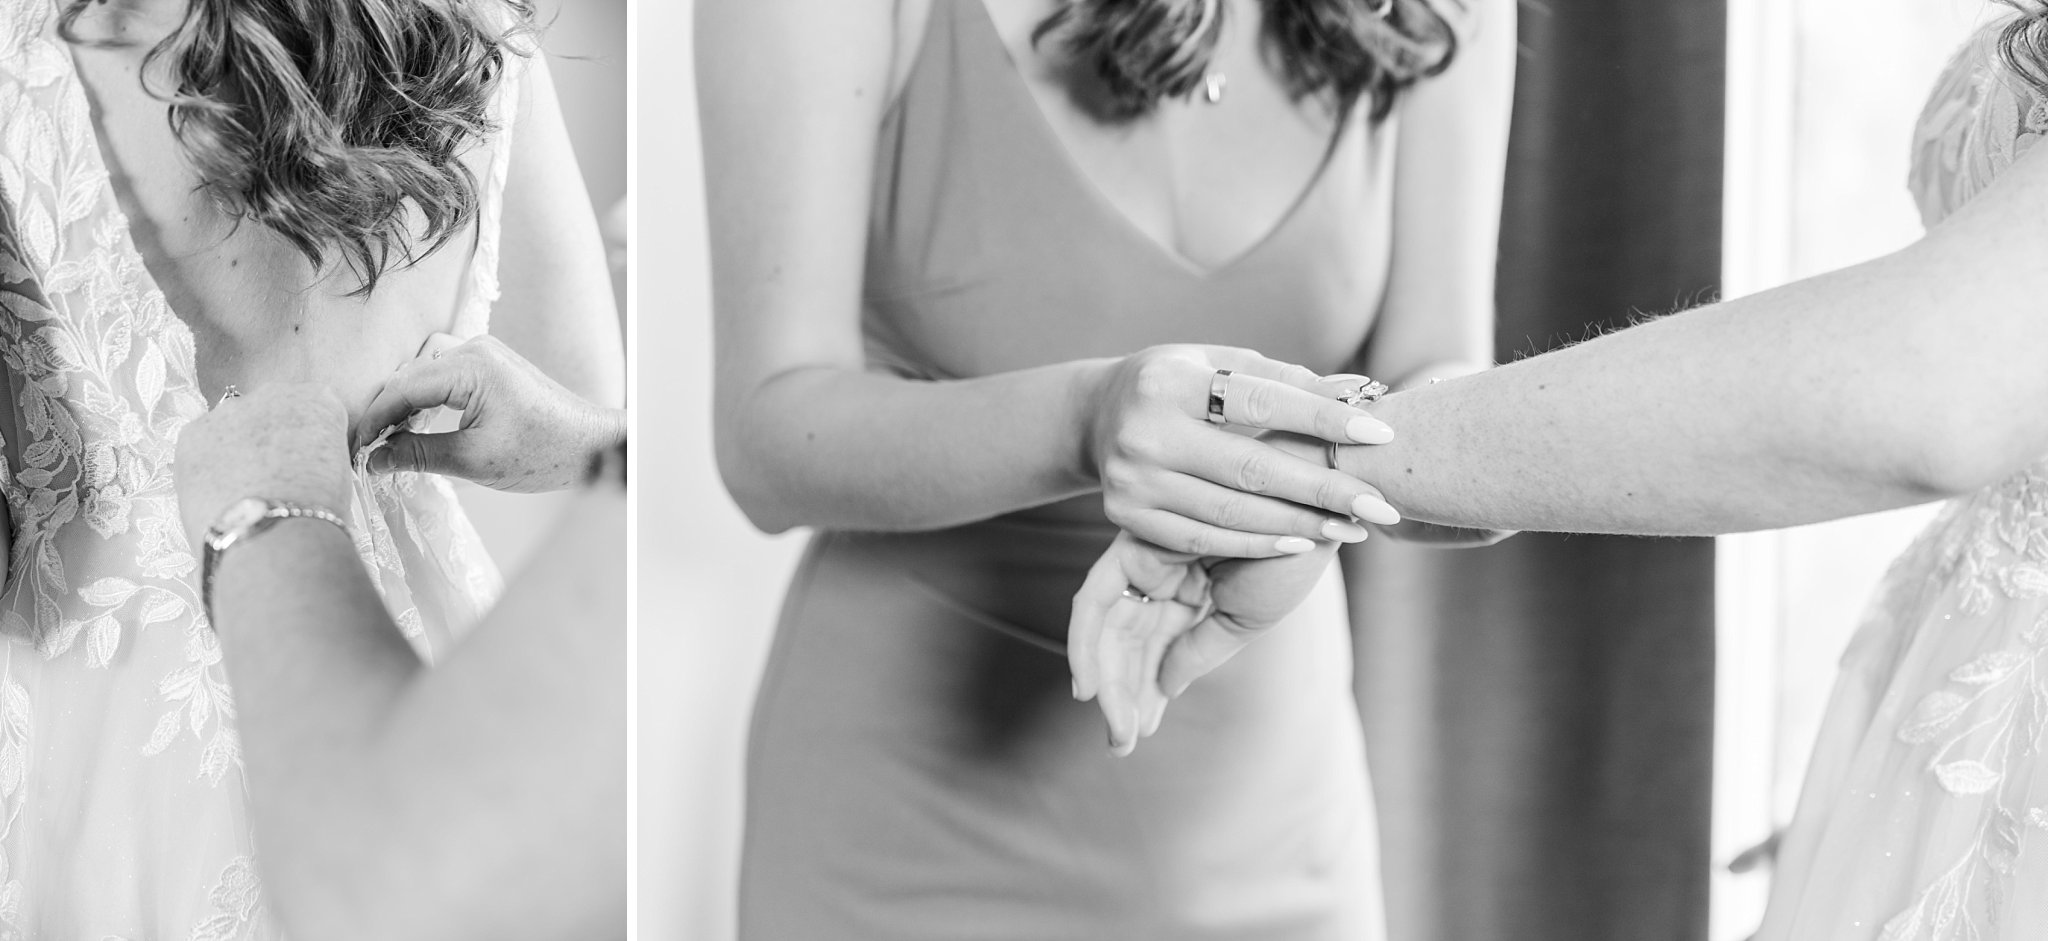 a bridesmaid ties up a bride's wedding dress